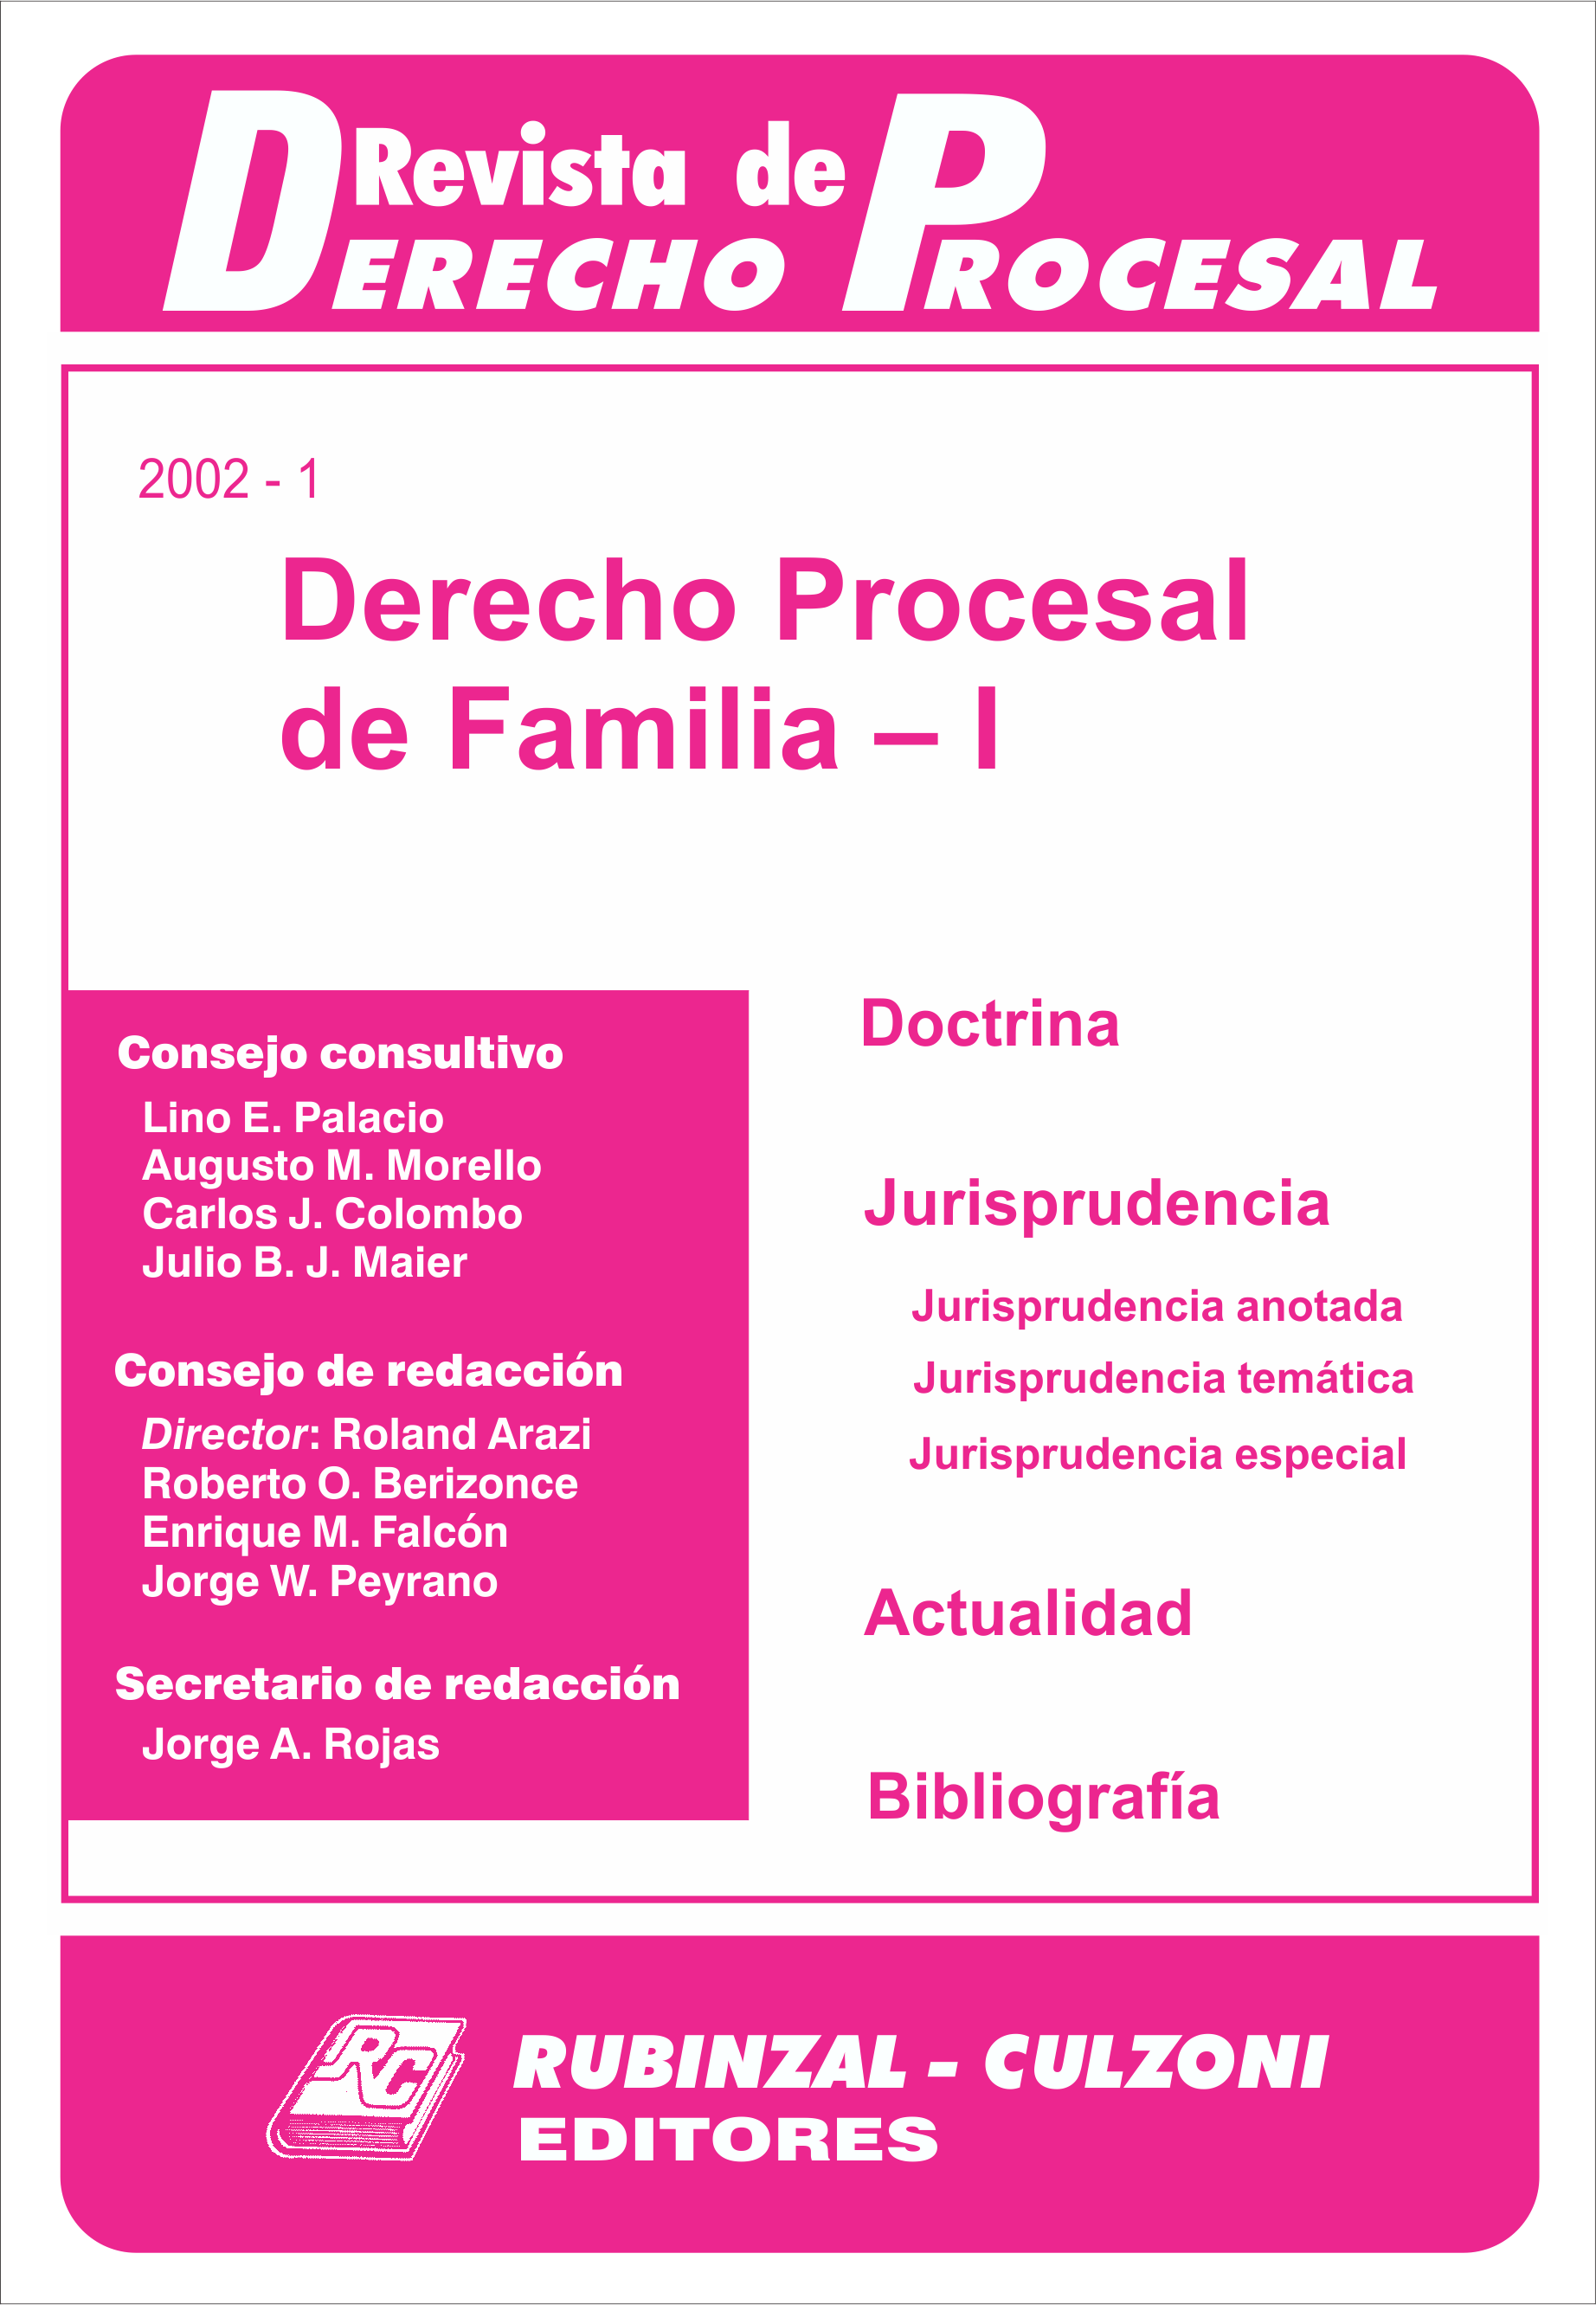 Revista de Derecho Procesal - Derecho Procesal de Familia - I